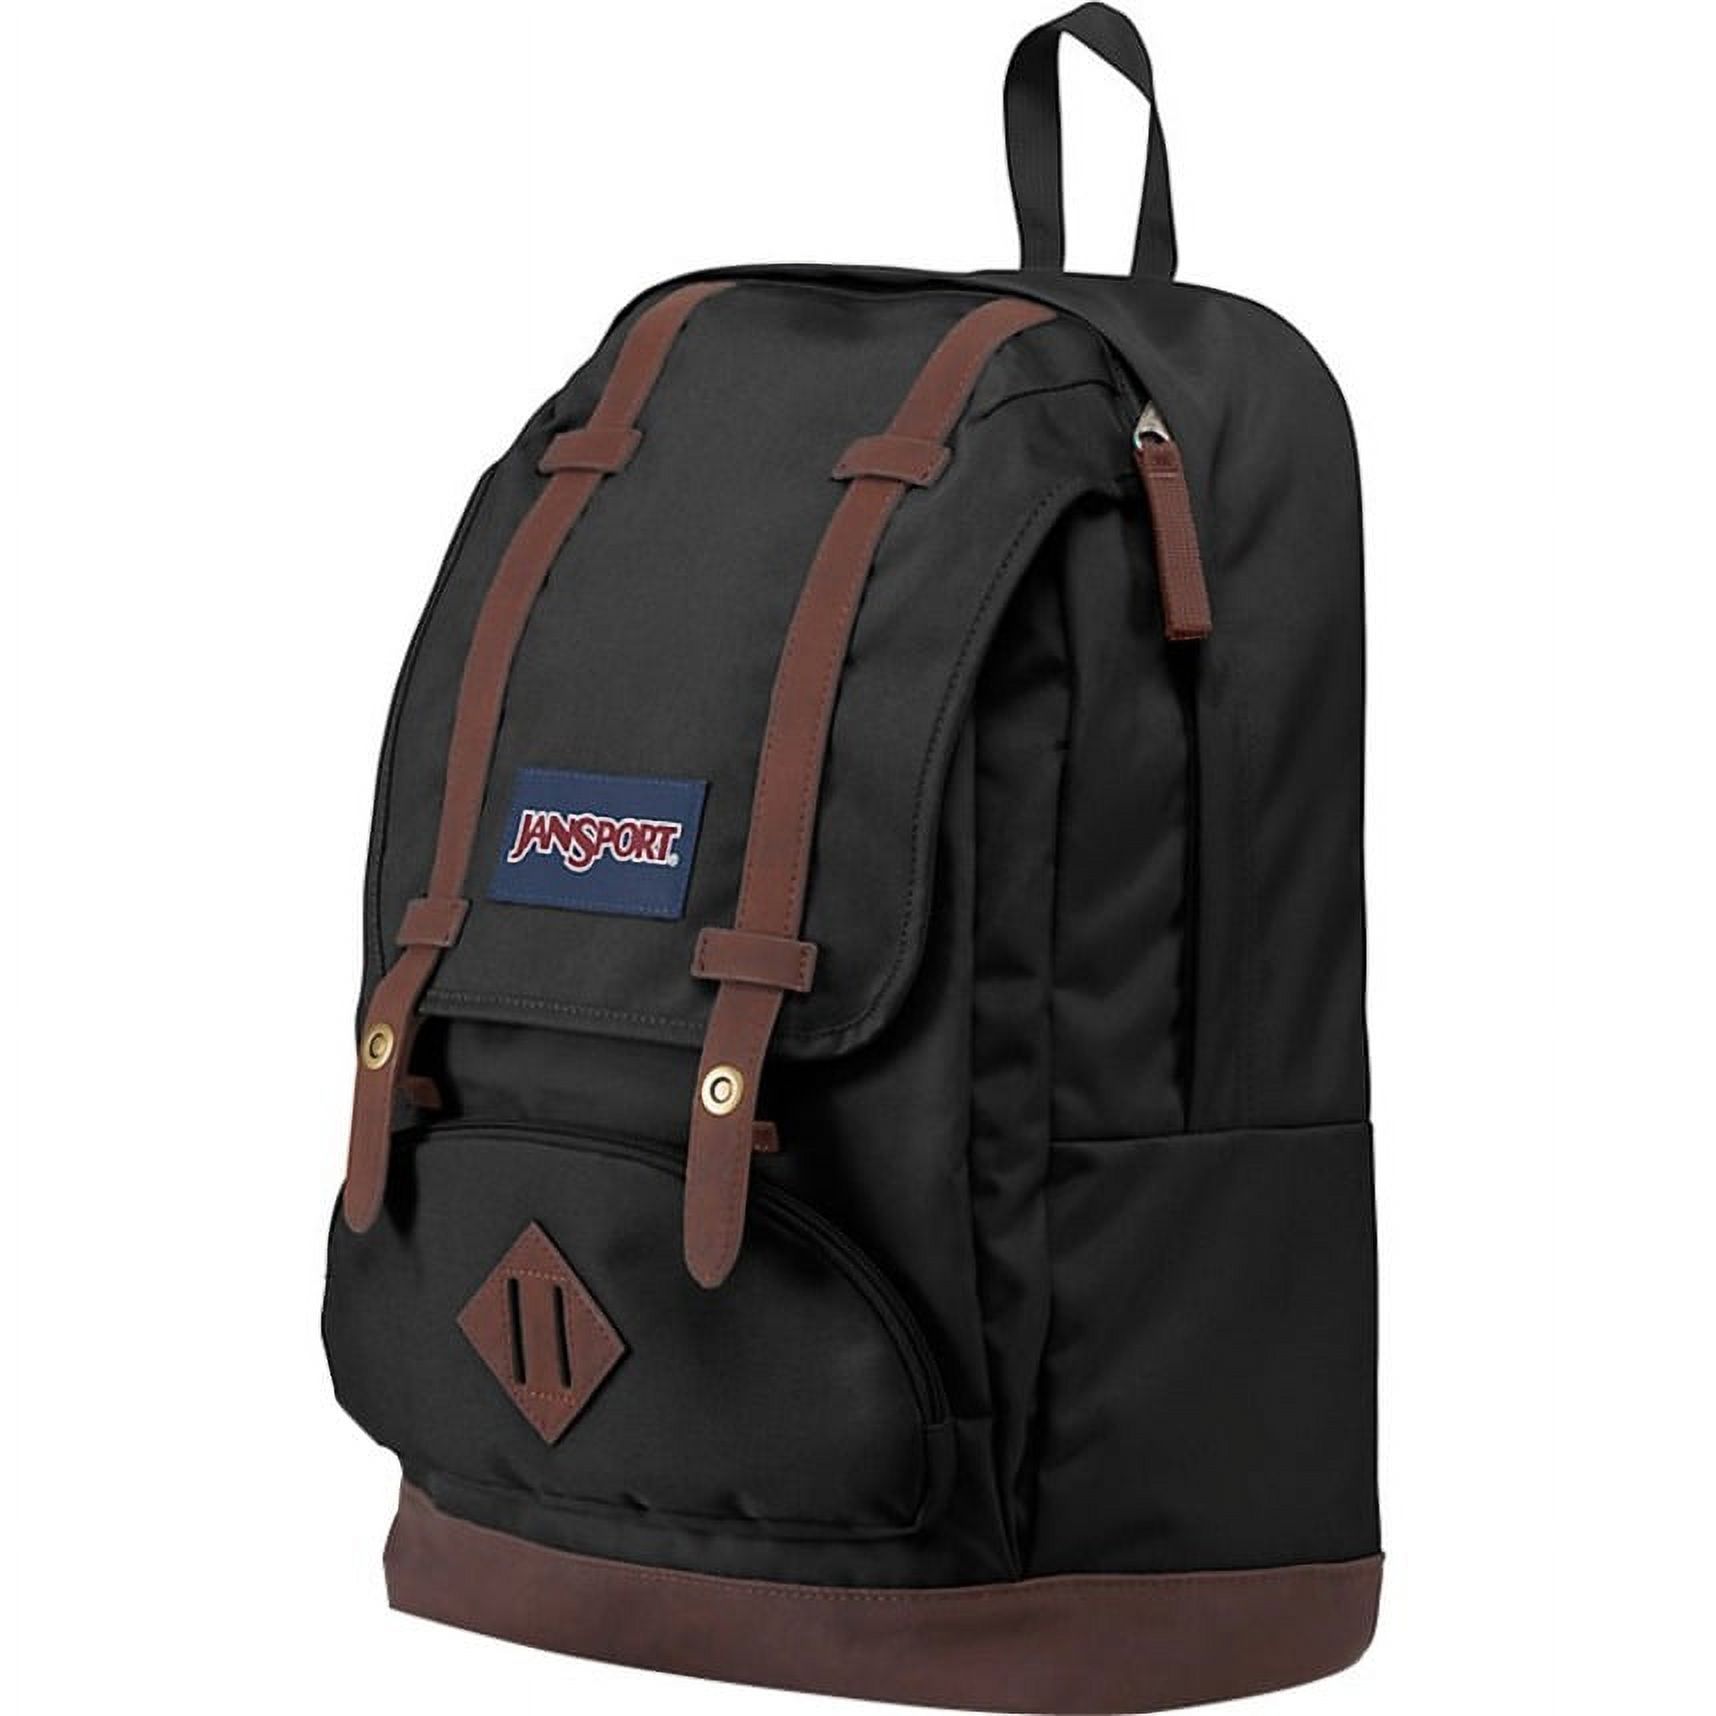 Jansport Cortlandt Carrying Case (Backpack) for 15" Notebook, Black - image 3 of 4